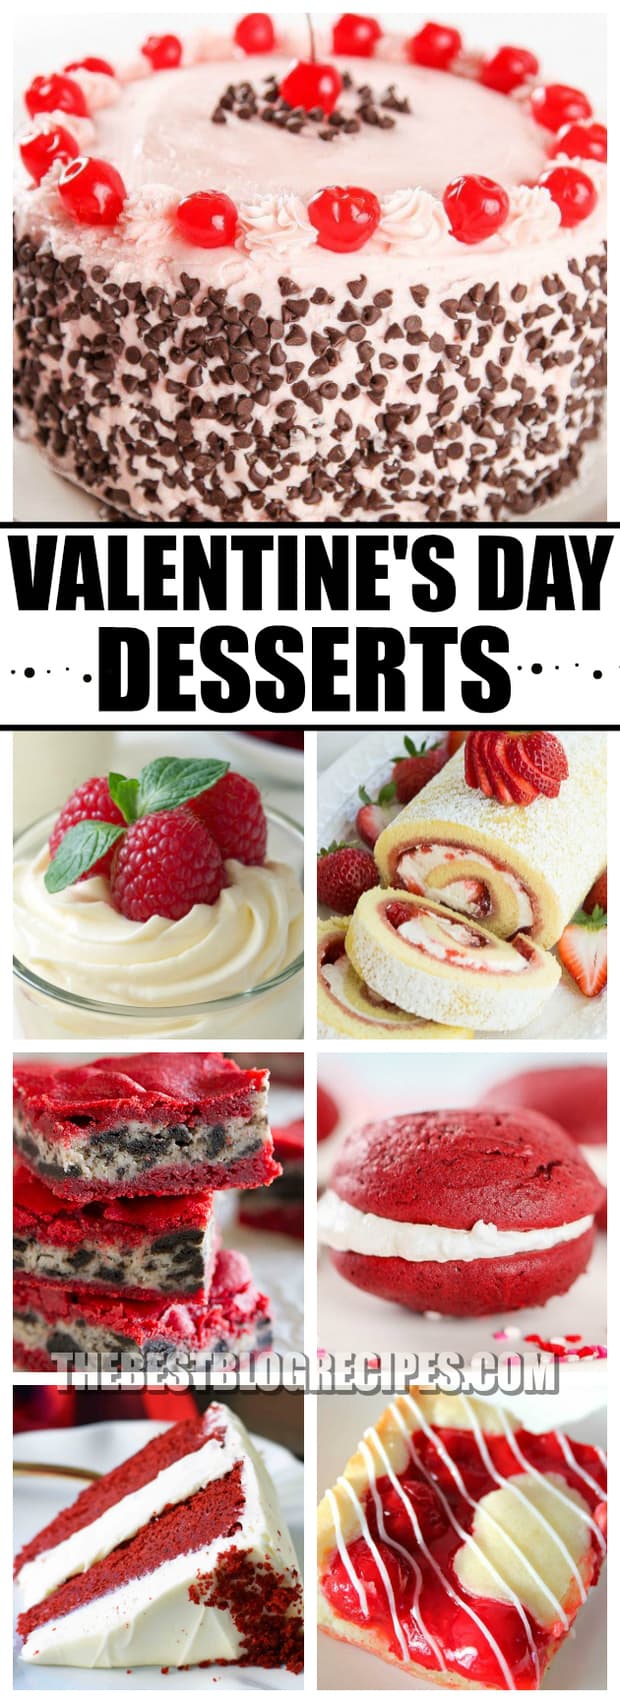 The Best Valentine's Day Desserts